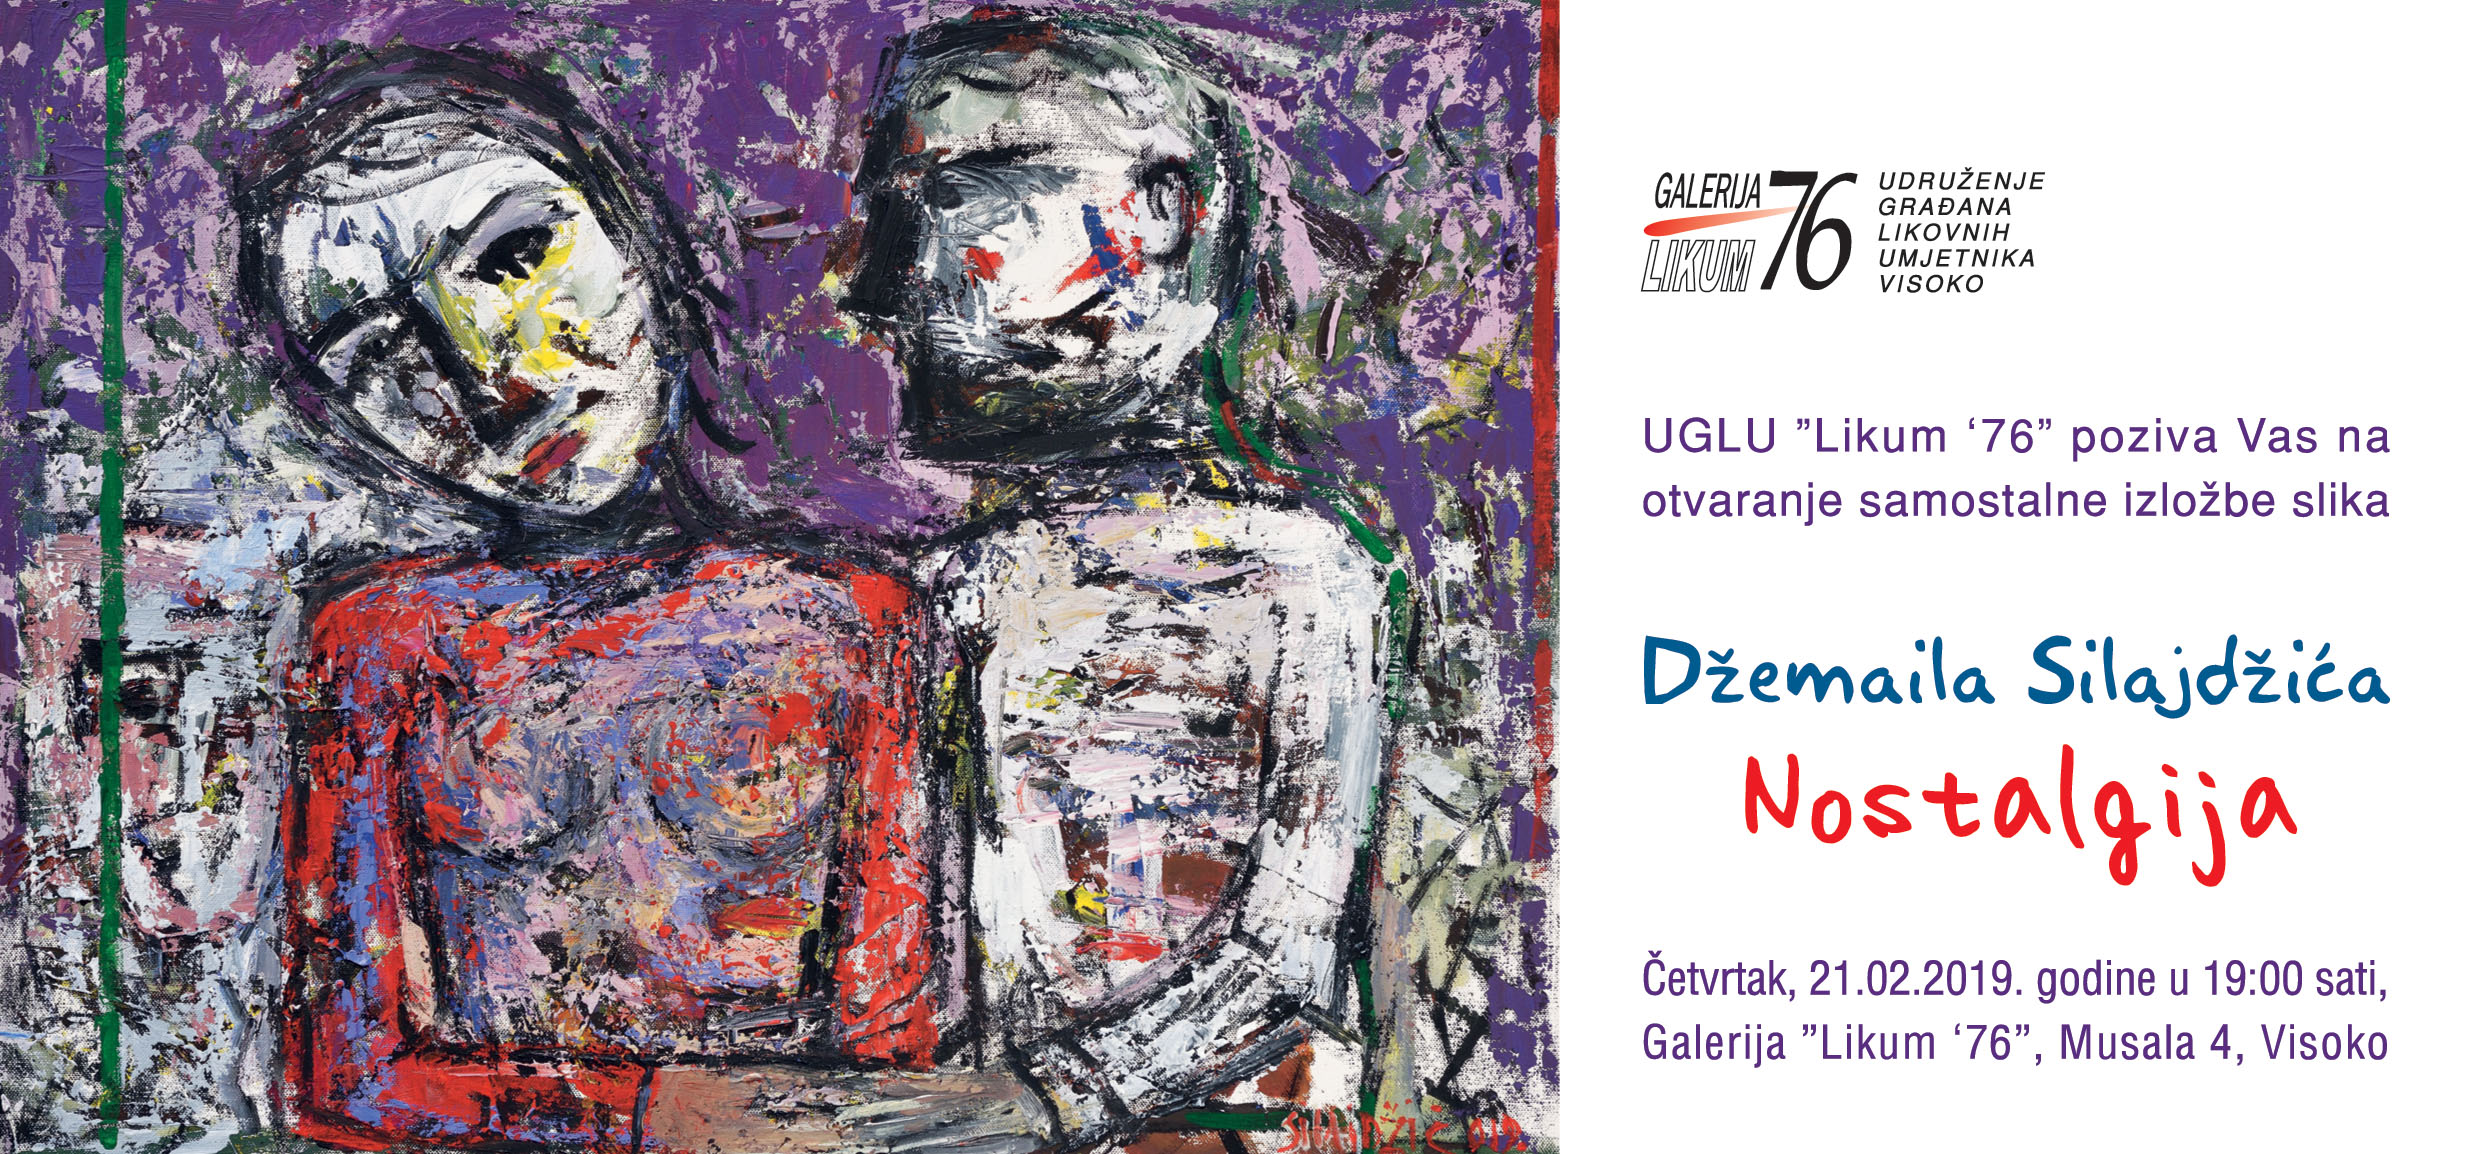 U četvrtak izložba Džemaila Silajdžića pod nazivom “Nostalgija” u galeriji Likum ‘76